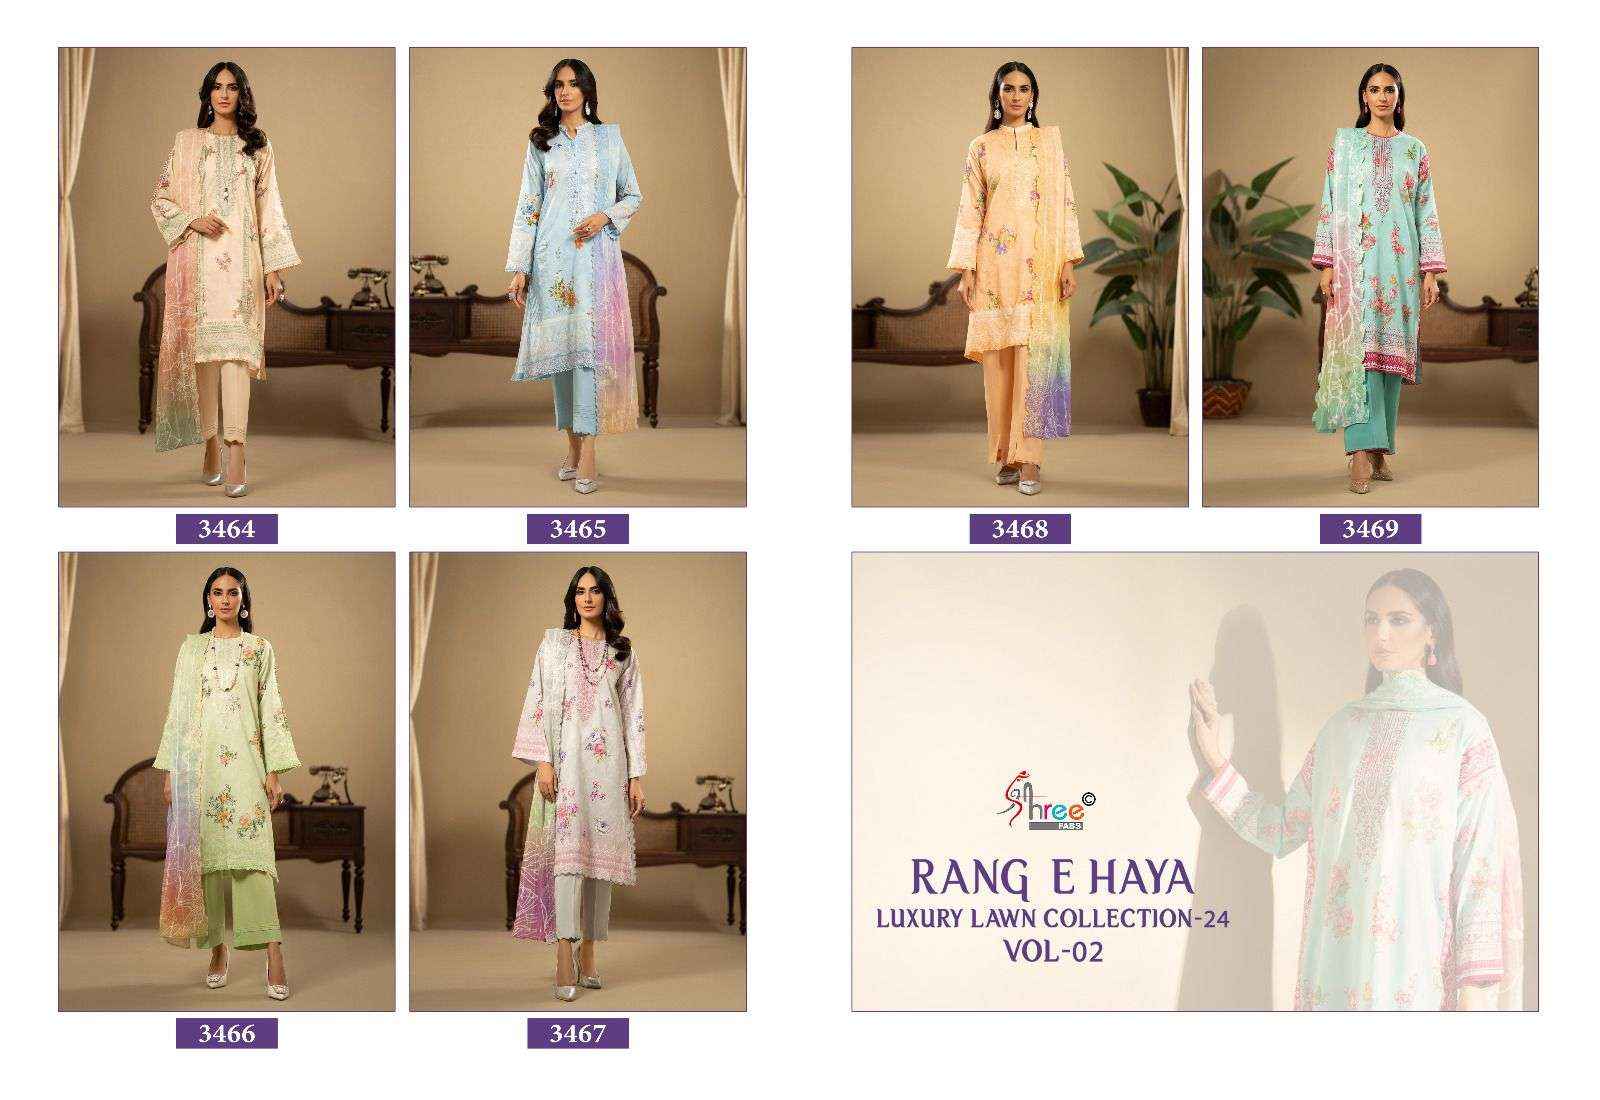 Shree Fabs Rang e Haya Lawn Collection 24 Vol 2 Cotton Dress Material 6 pcs Catalogue